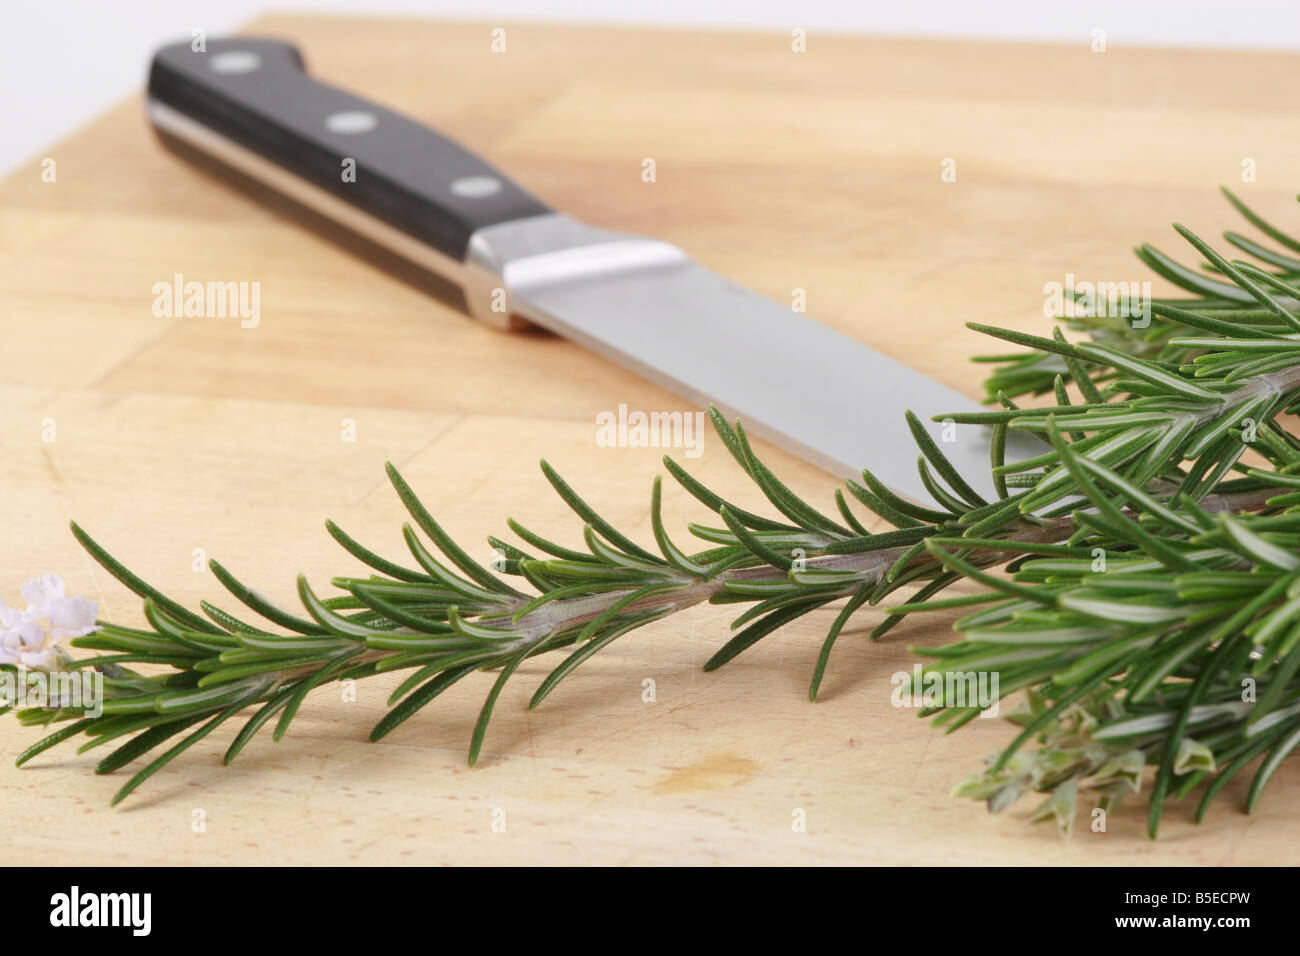 rosemary knife Stock Photo